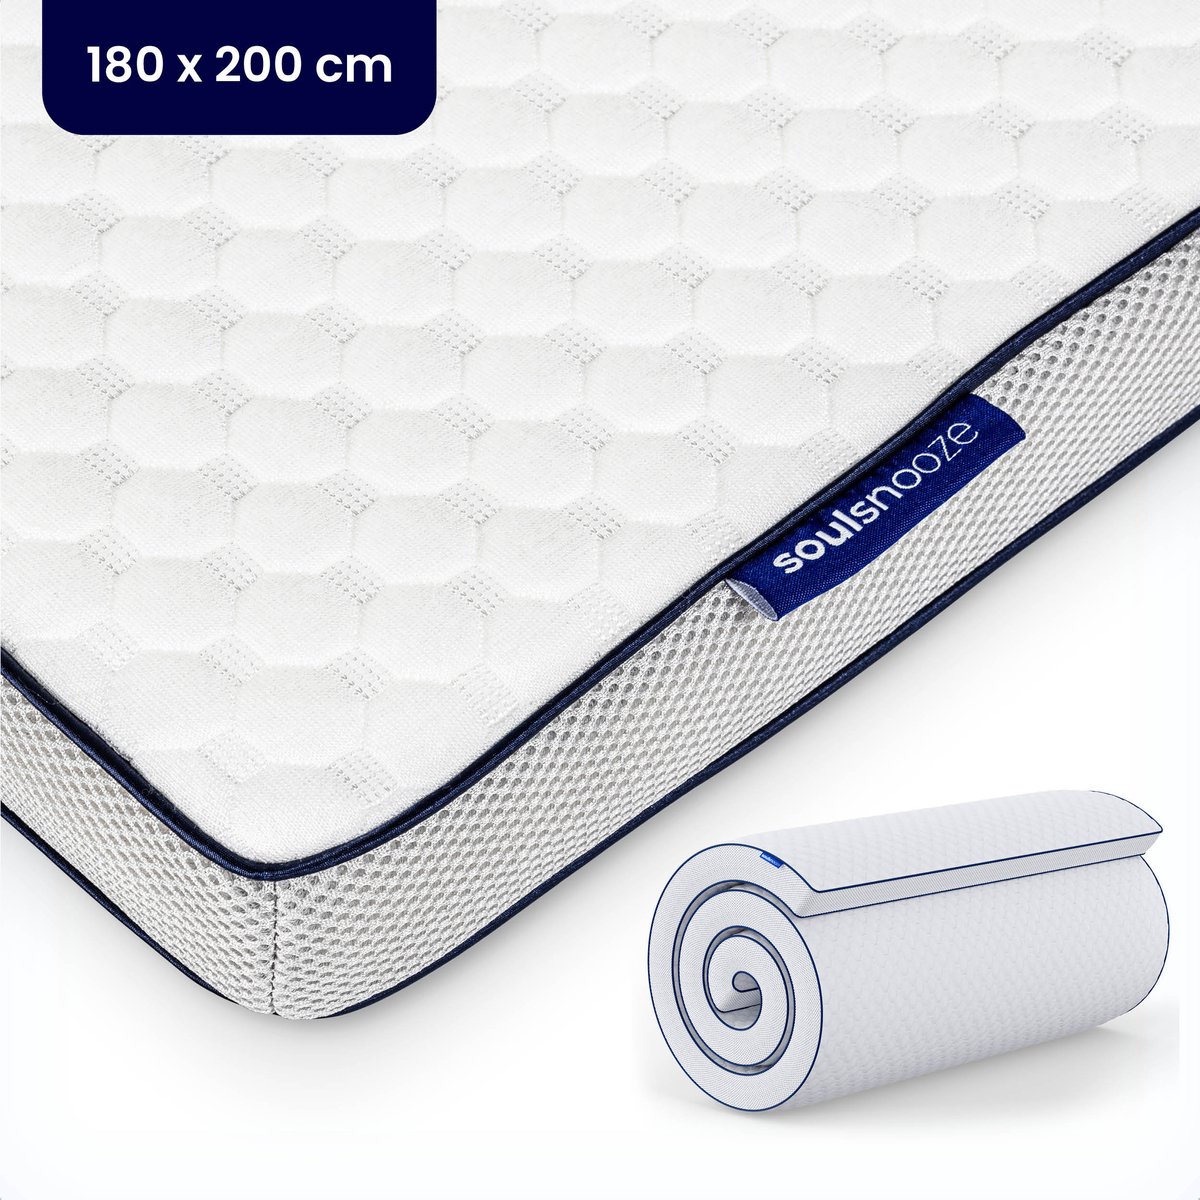 Soulsnooze® - DuoComfort Premium Topper 180x200 cm - Topdekmatras - Aanpasbaar Design - 3D Air Mesh - Traagschuim - Memory Foam Matras - 30 Nachten Proefslapen - Wasbare Hoes - Anti Allergie